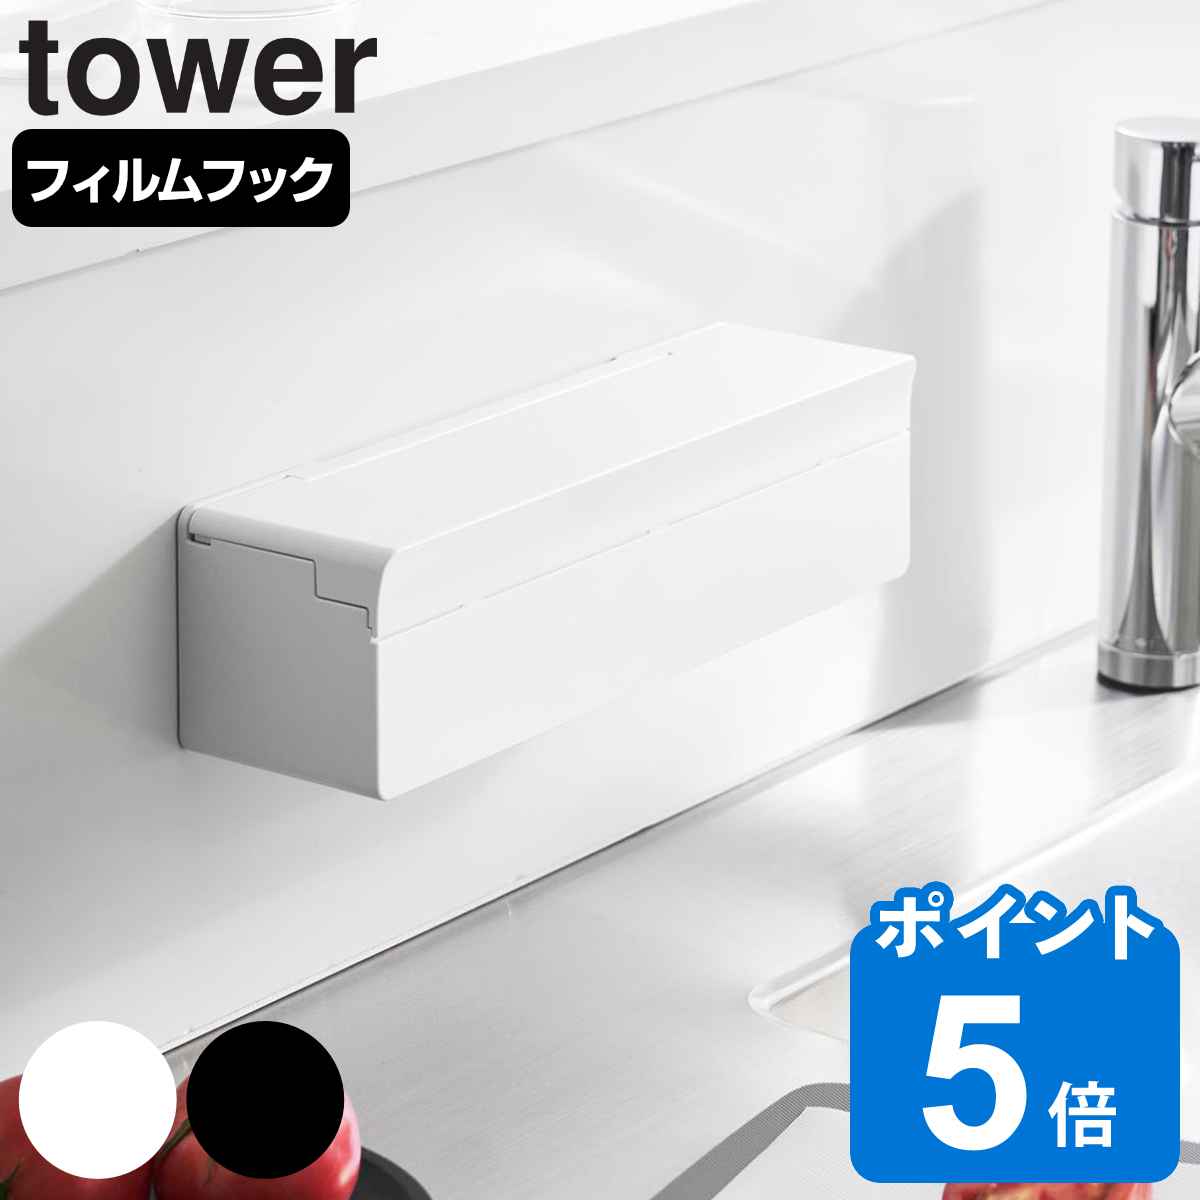 山崎実業 tower フィルムフックまな板シートケース タワー